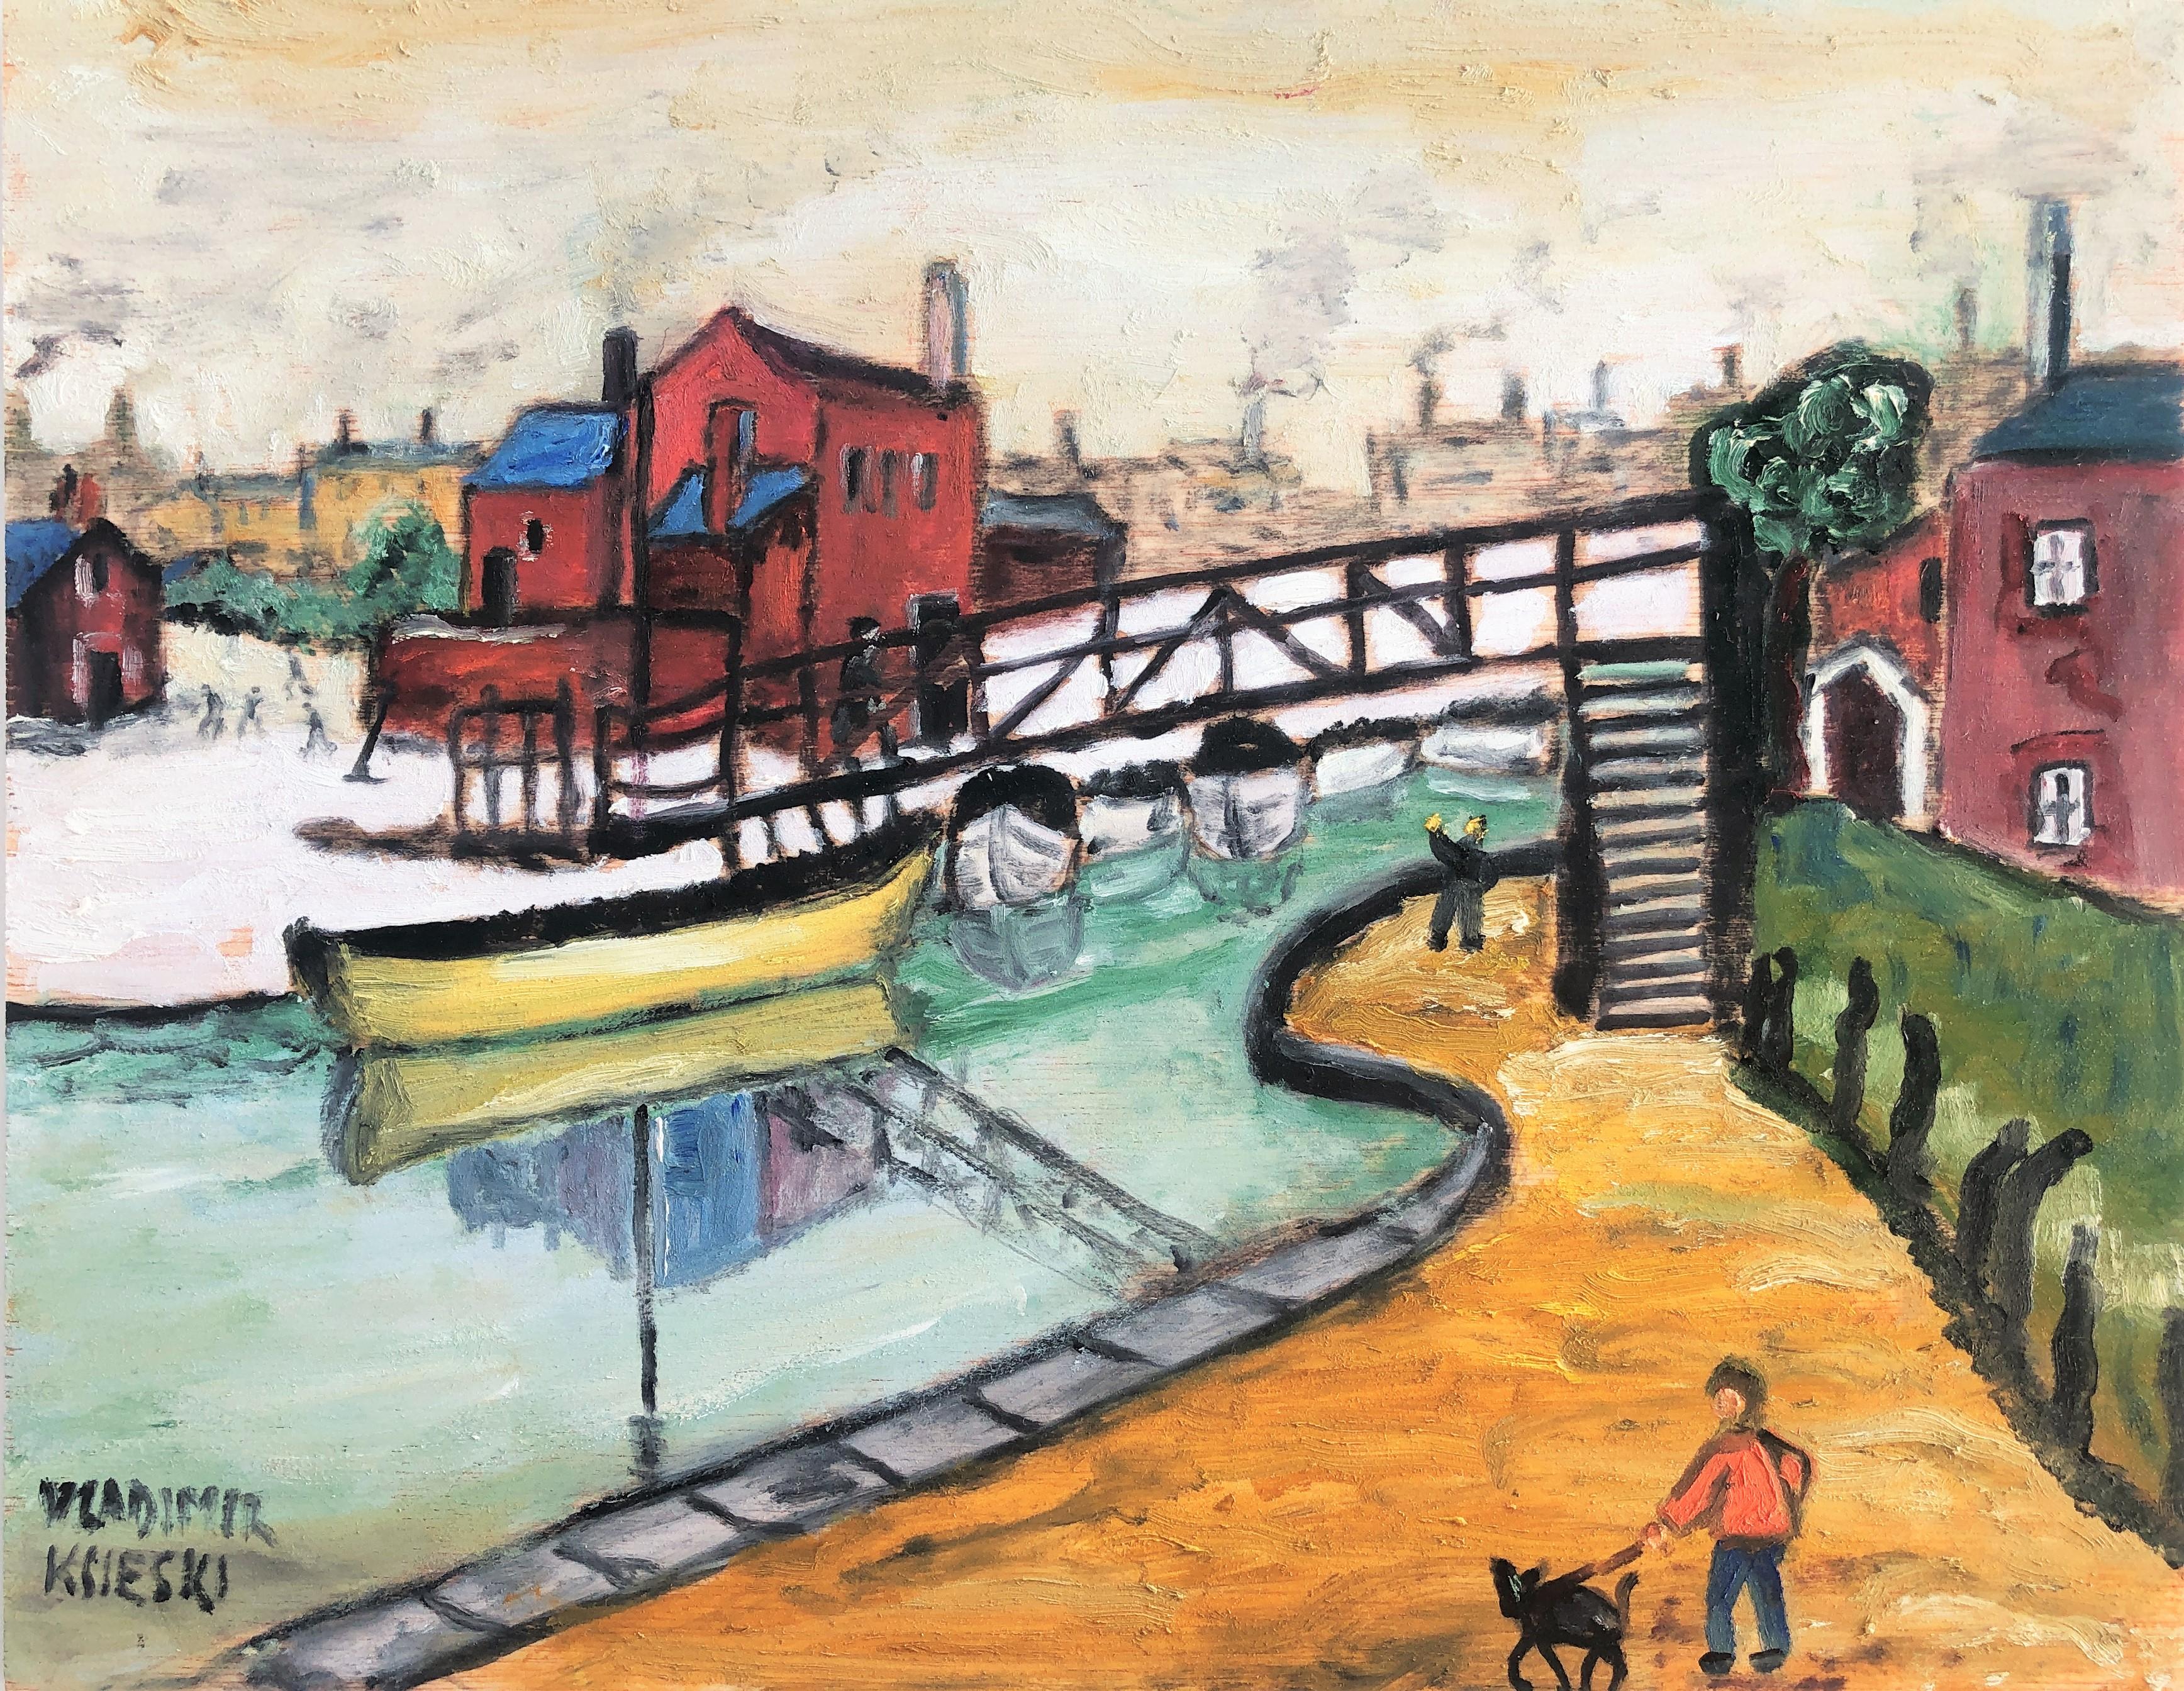 Landscape Painting Vladimir Ksieski - Peinture à l'huile - Paysage avec paysage marin, rivière et bateau